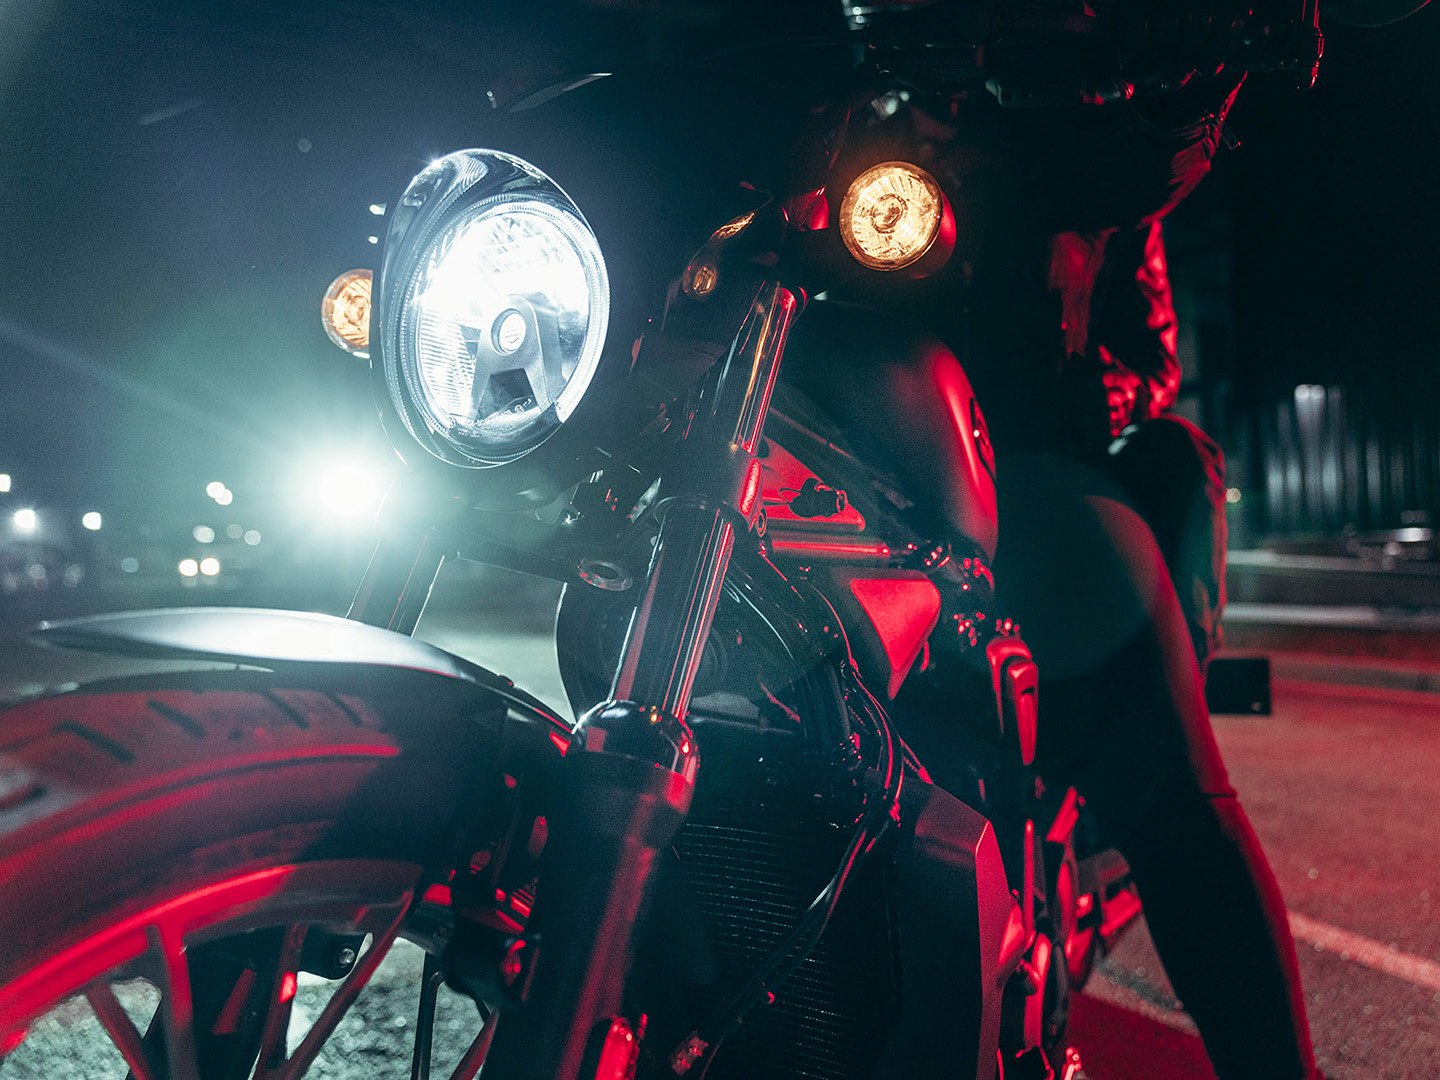 2023 Harley-Davidson Nightster® Special in Colorado Springs, Colorado - Photo 5